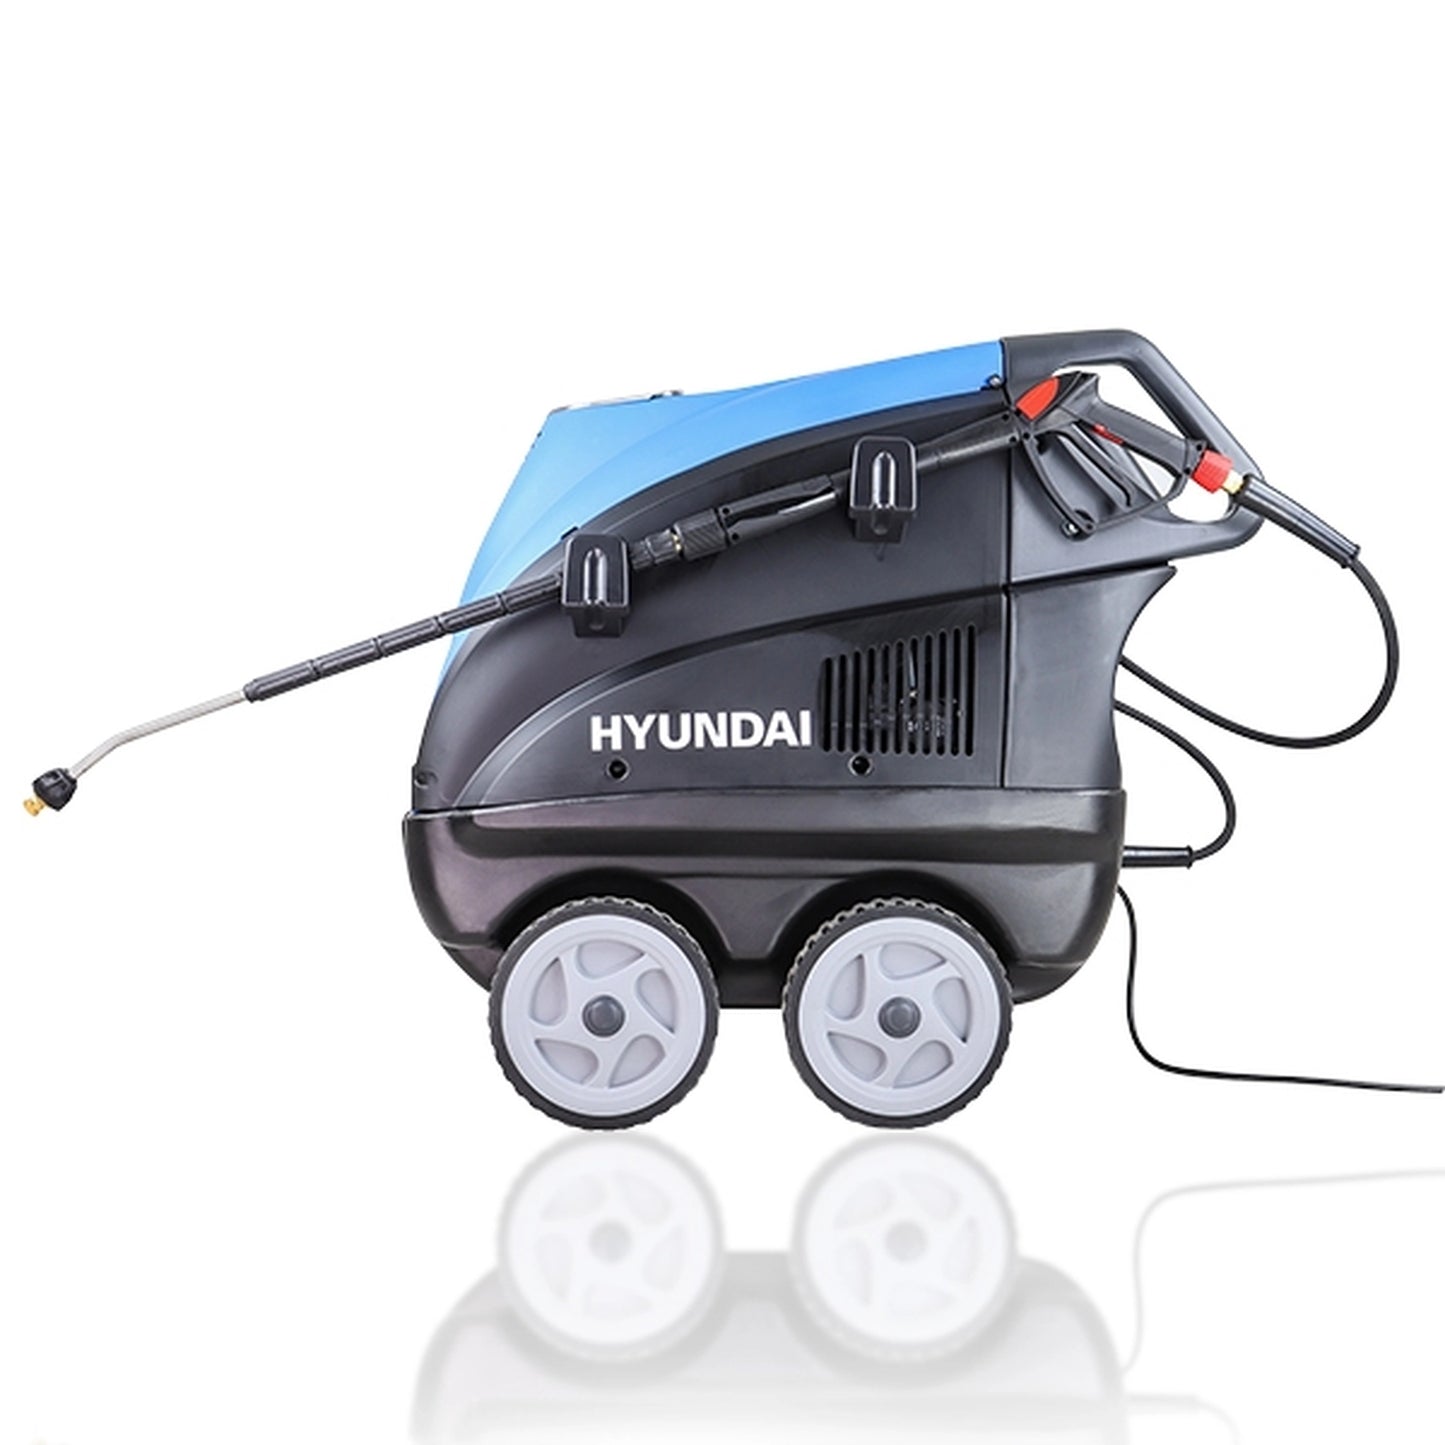 Hyundai HY150HPW-1 Hot Pressure Washer